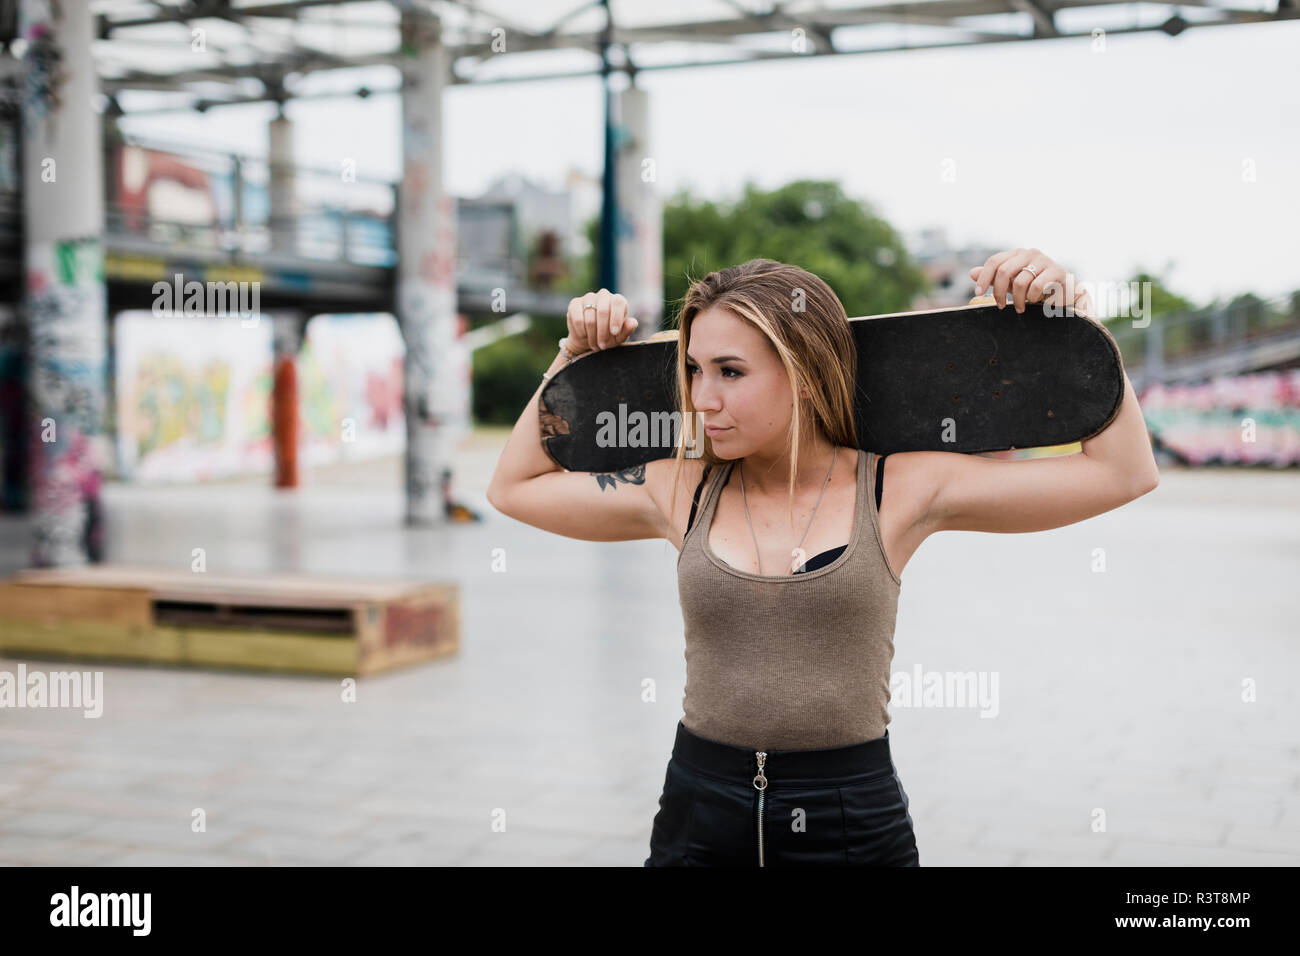 Cool young woman carrying skateboard dans la ville Banque D'Images